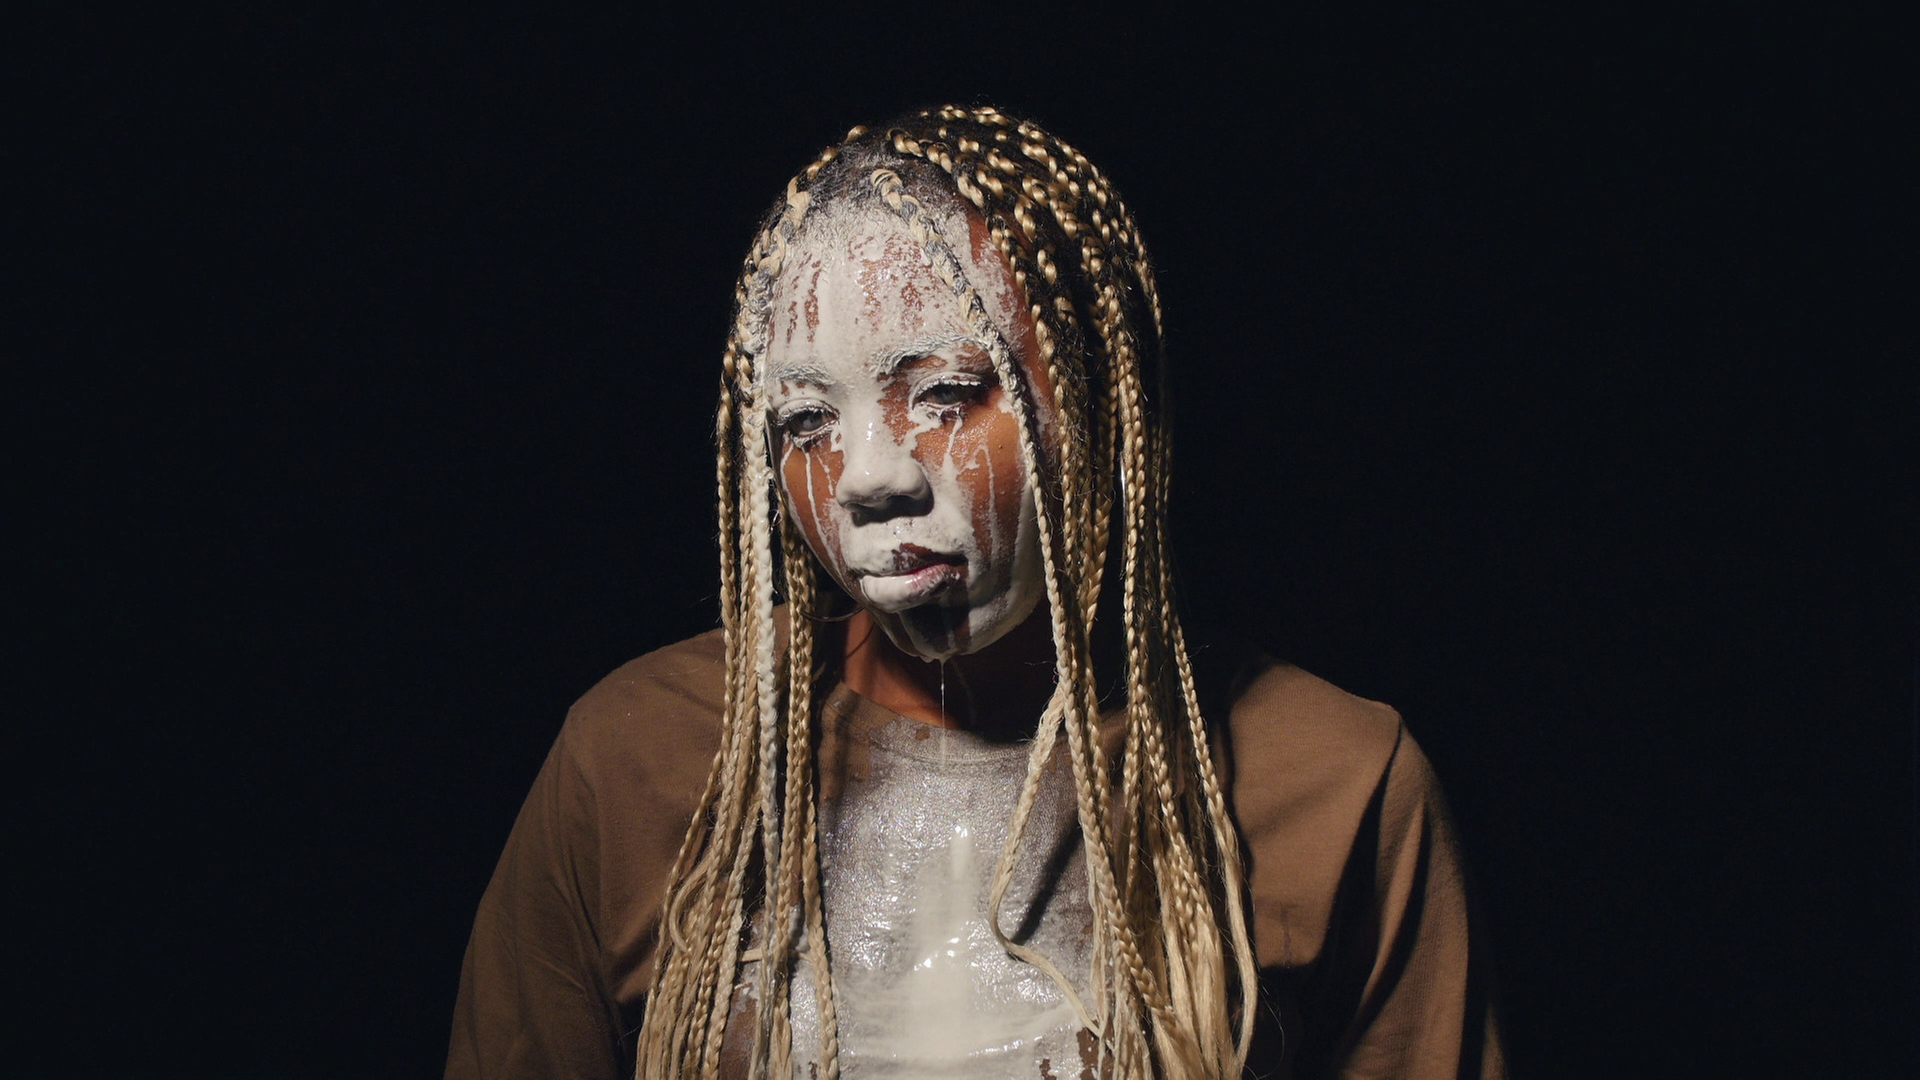 Videostill aus Martine Syms Video "Lesson LXXV" (2017). Das Bild zeigt die afroamerikanische Künstlerin Martine Syms, der weiße Flüssigkeit über das Gesicht läuft.